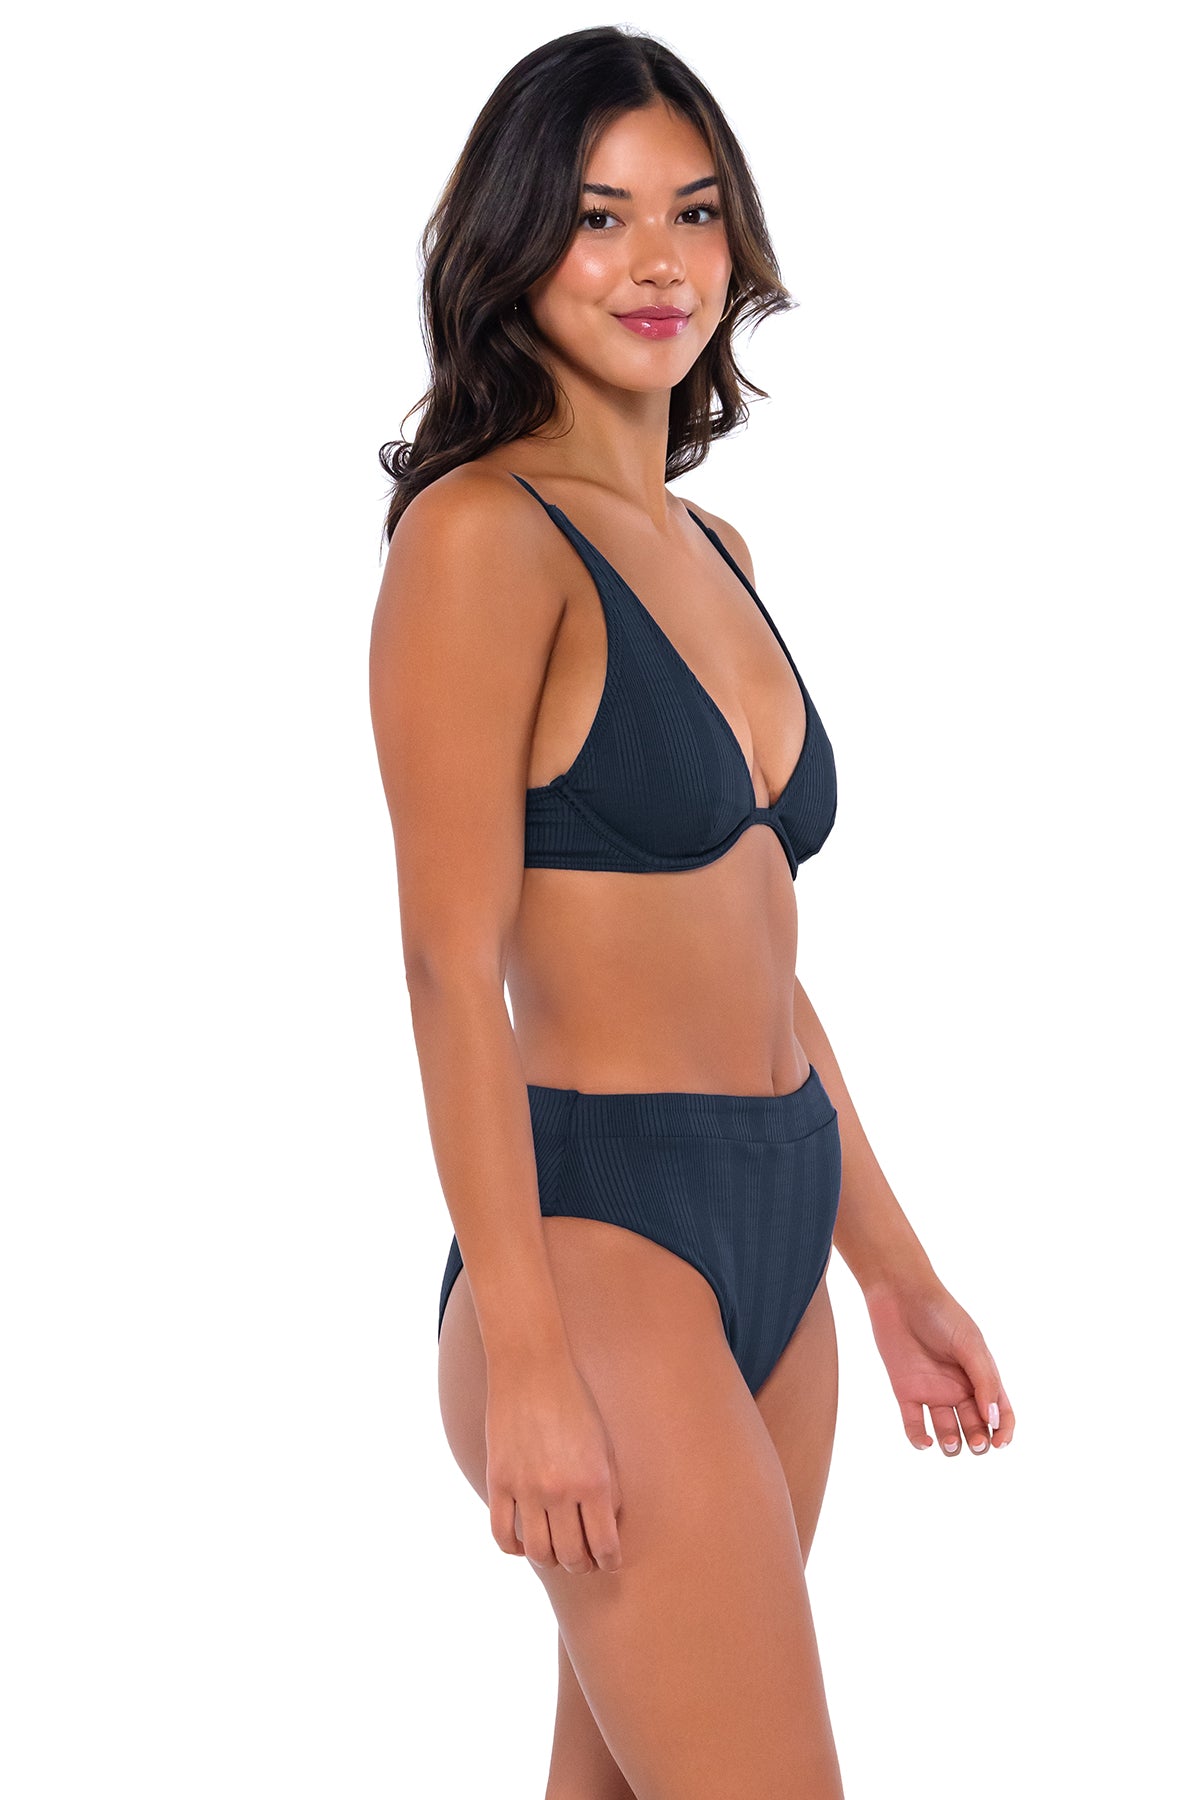 Side pose #1 of Chonzie wearing B Swim Navy Baja Rib Margot Bottom paired with Wyatt over the shoulder bikini